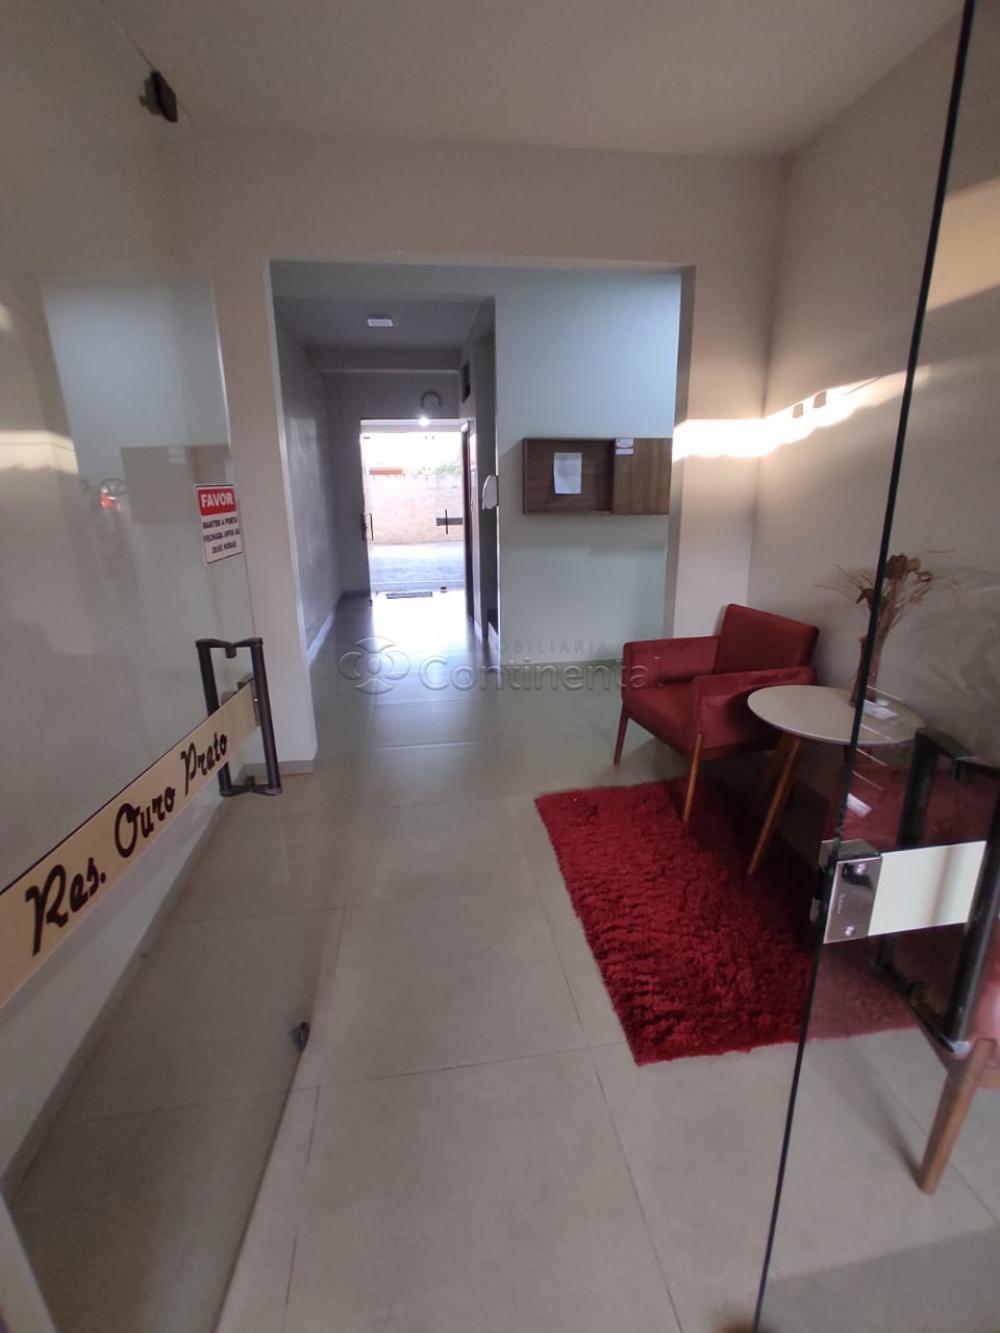 Alugar Apartamento / Padrão em Dourados R$ 1.200,00 - Foto 2